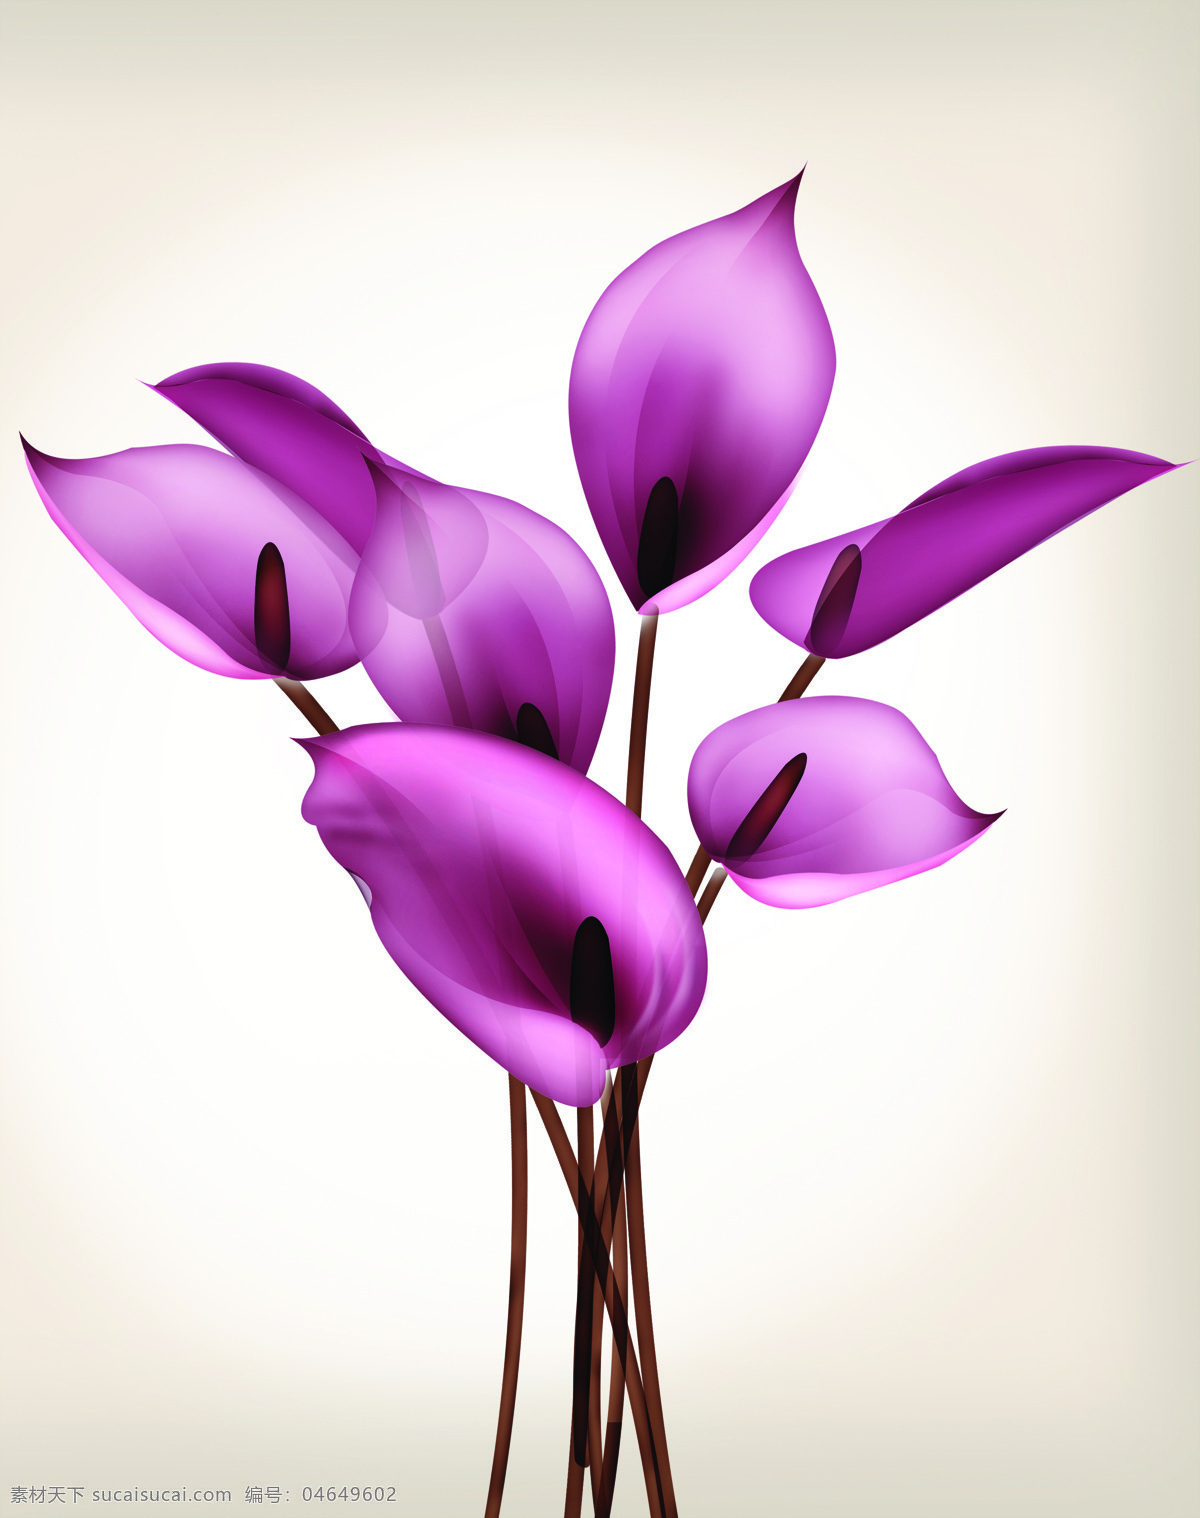 紫色 百合 百合花 淡紫色背景 花朵 y1869 紫情 紫色百合 索亚卡19 移门大全19 家居装饰素材